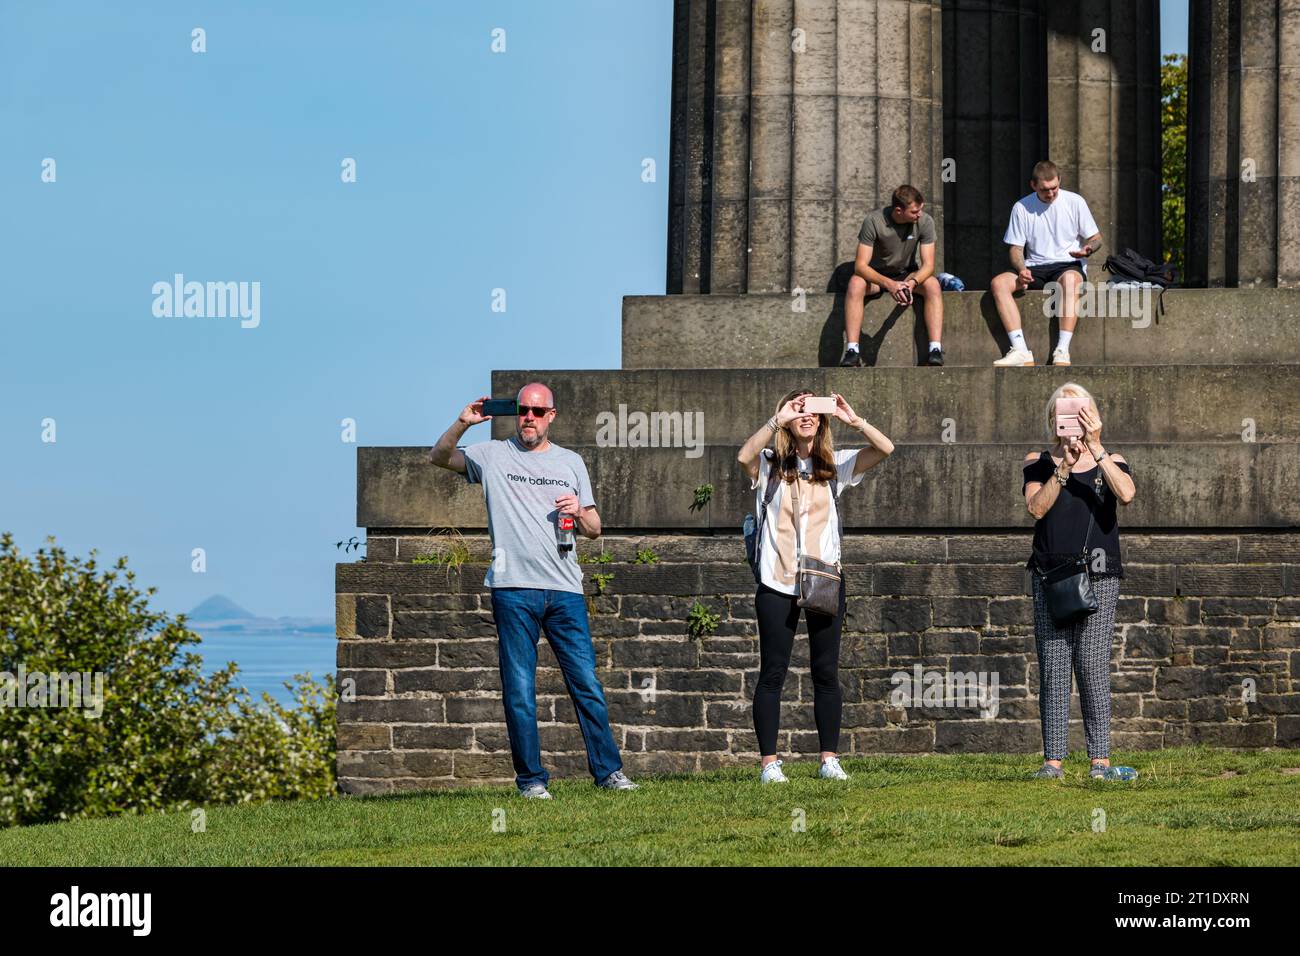 Personnes prenant des photos sur des téléphones portables au National Monument, Calton Hill, Édimbourg, Écosse, Royaume-Uni Banque D'Images